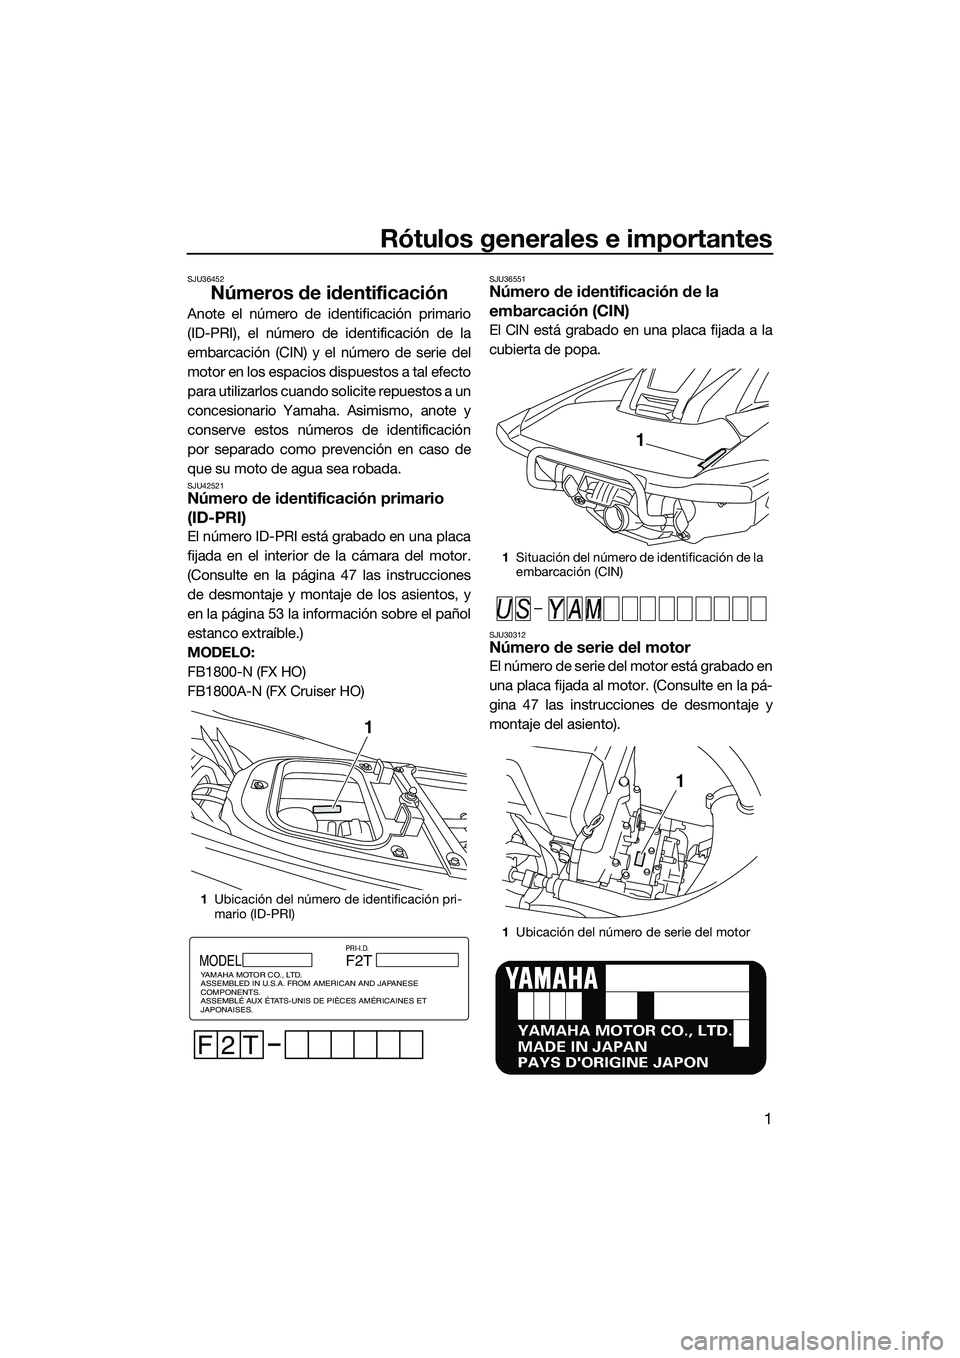 YAMAHA FX HO CRUISER 2014  Manuale de Empleo (in Spanish) Rótulos generales e importantes
1
SJU36452
Números de identificación
Anote el número de identificación primario
(ID-PRI), el número de identificación de la
embarcación (CIN) y el número de se